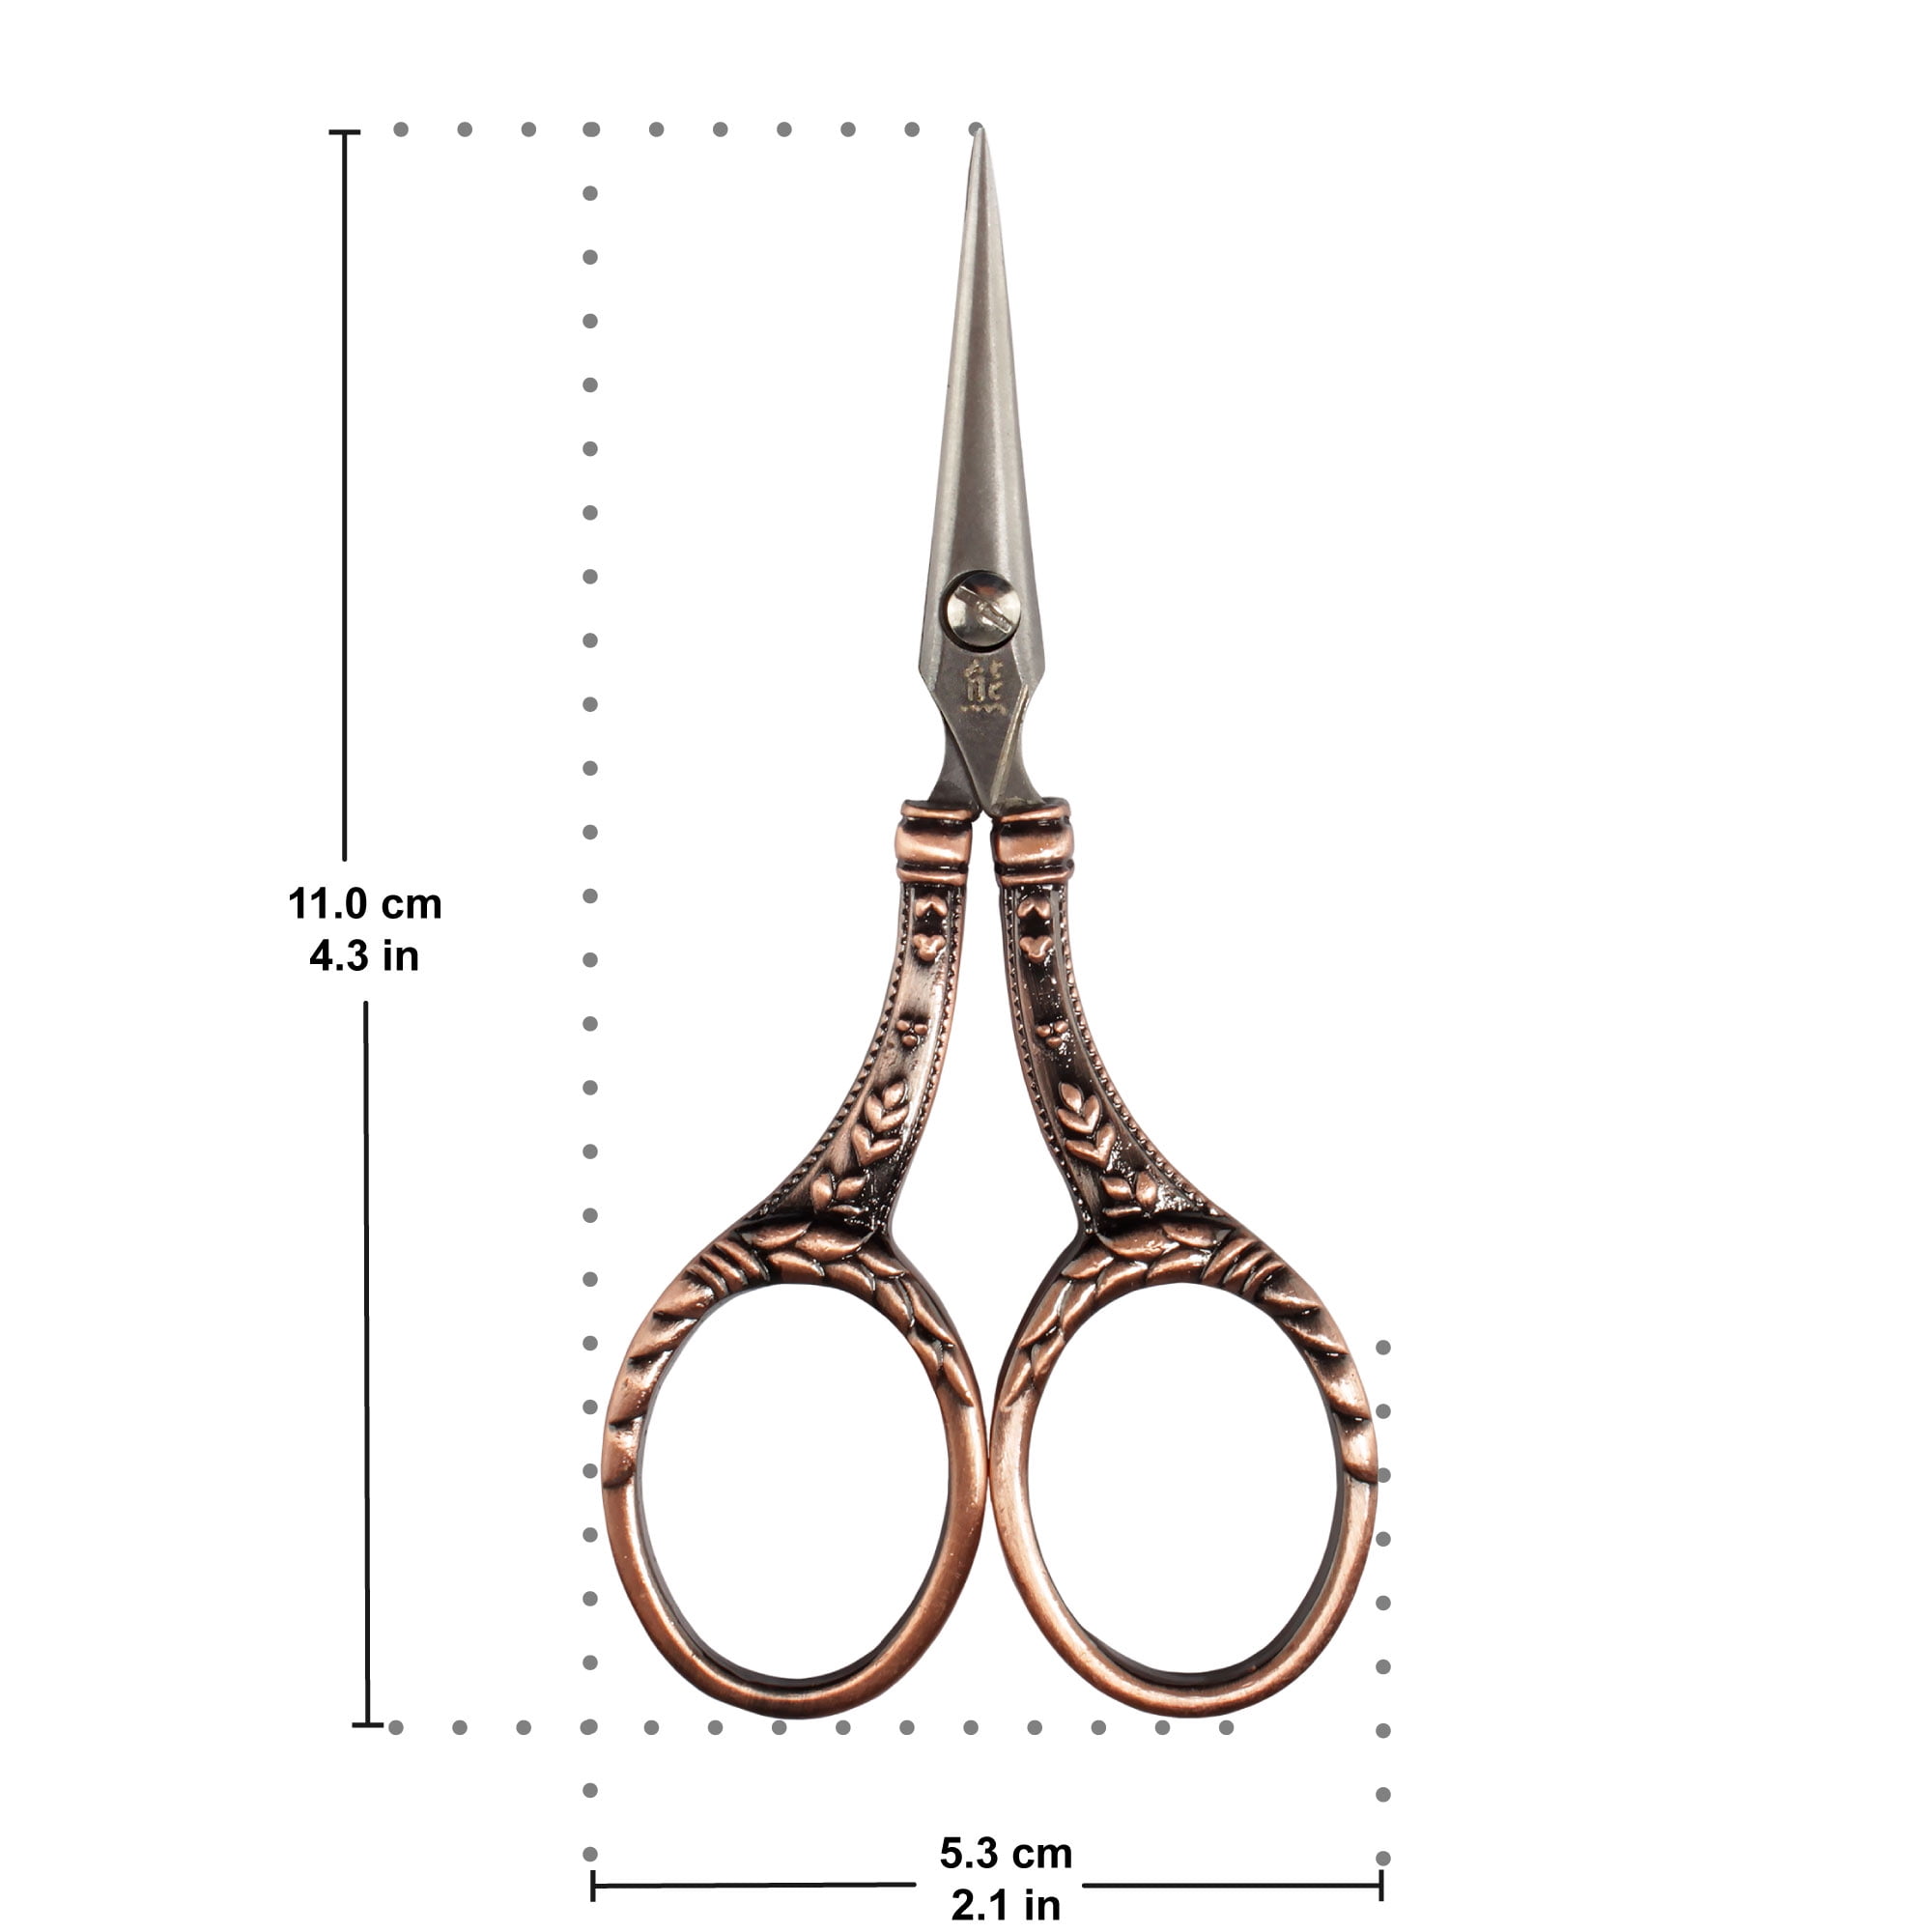 JubileeYarn Embroidery Scissors - 4 1/2 Fine Cut Sharp Point